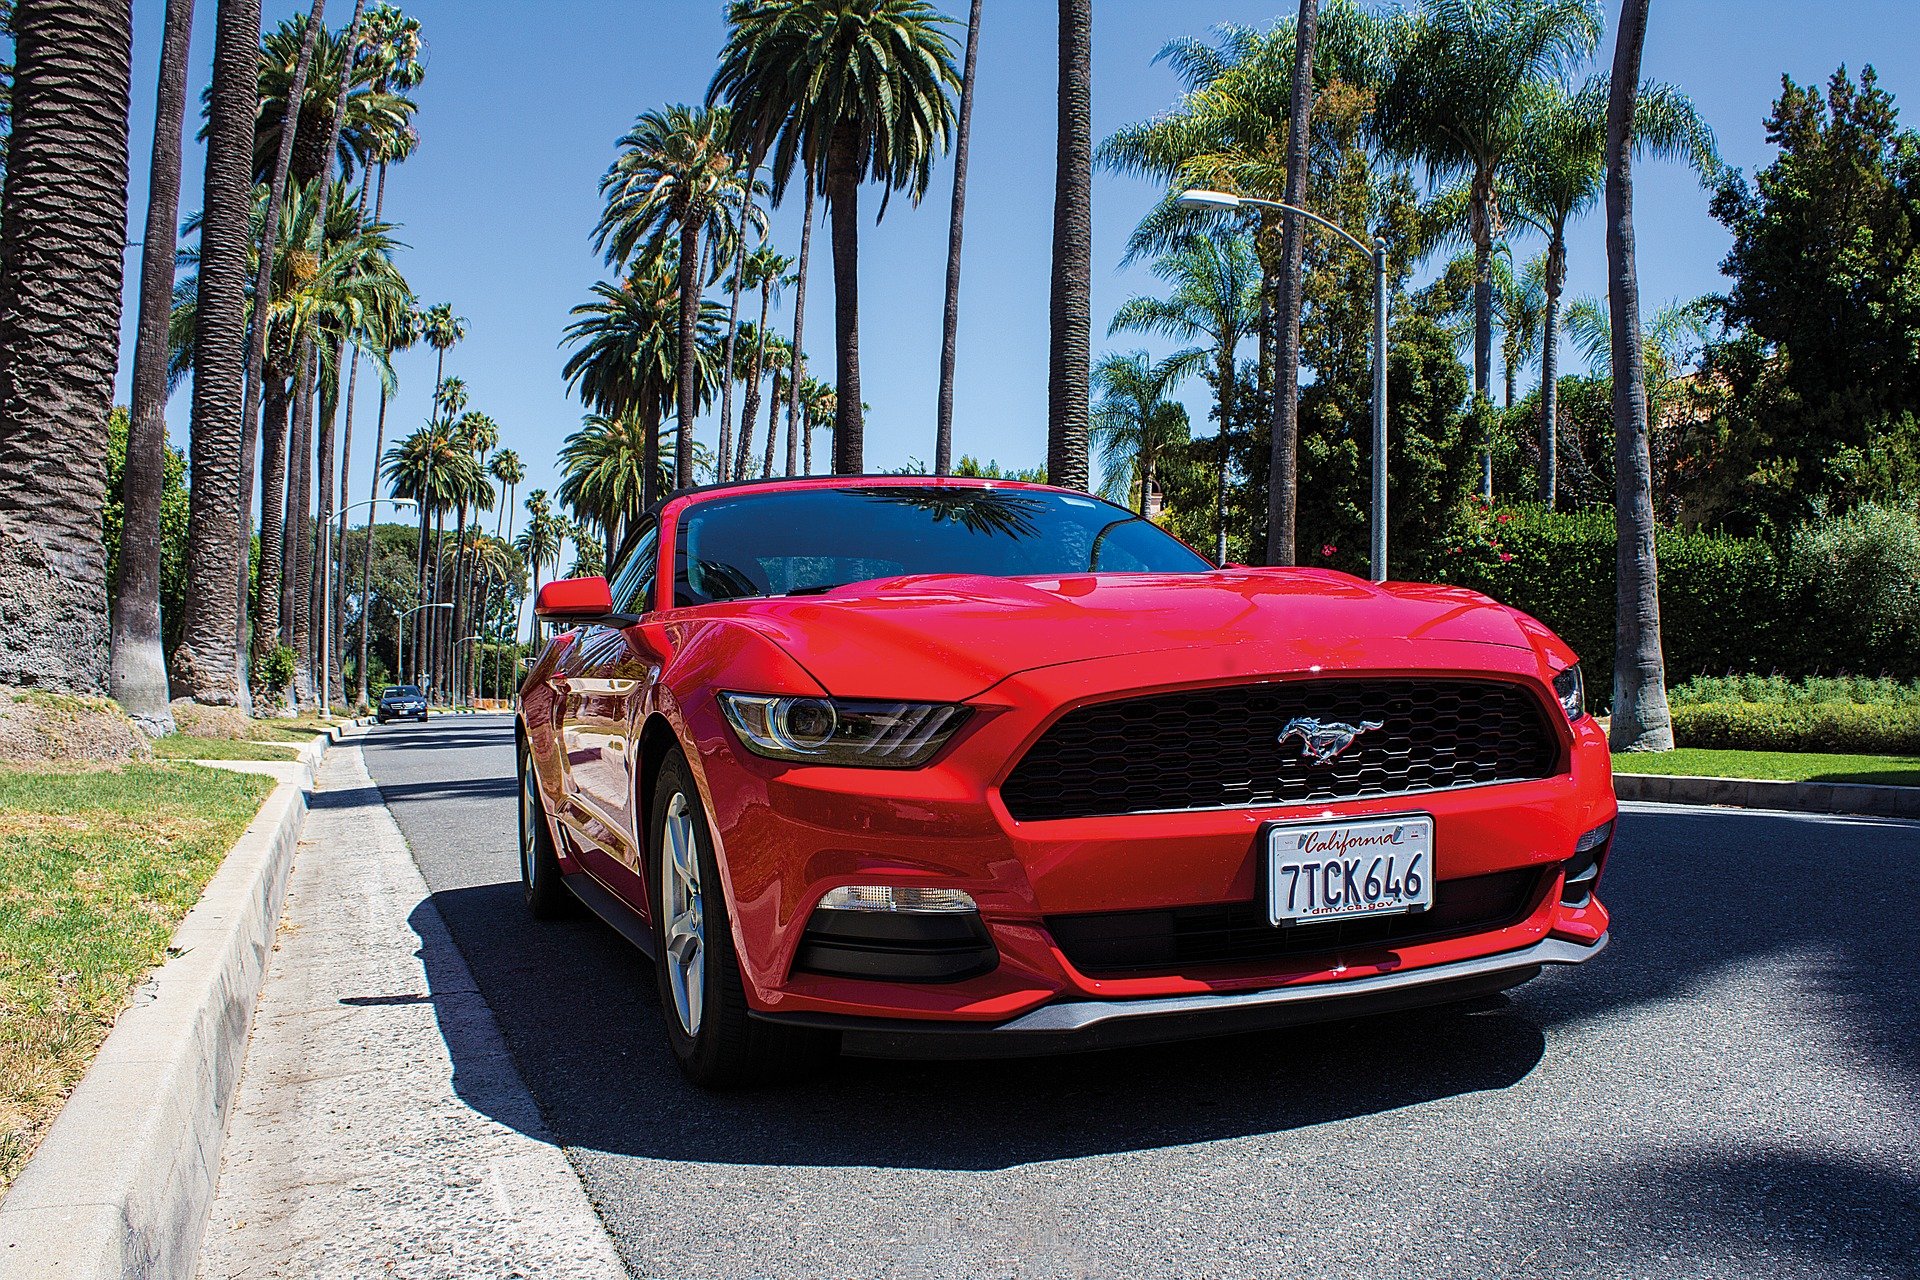 Ford Mustang in LA - VeteranCarDonations.org